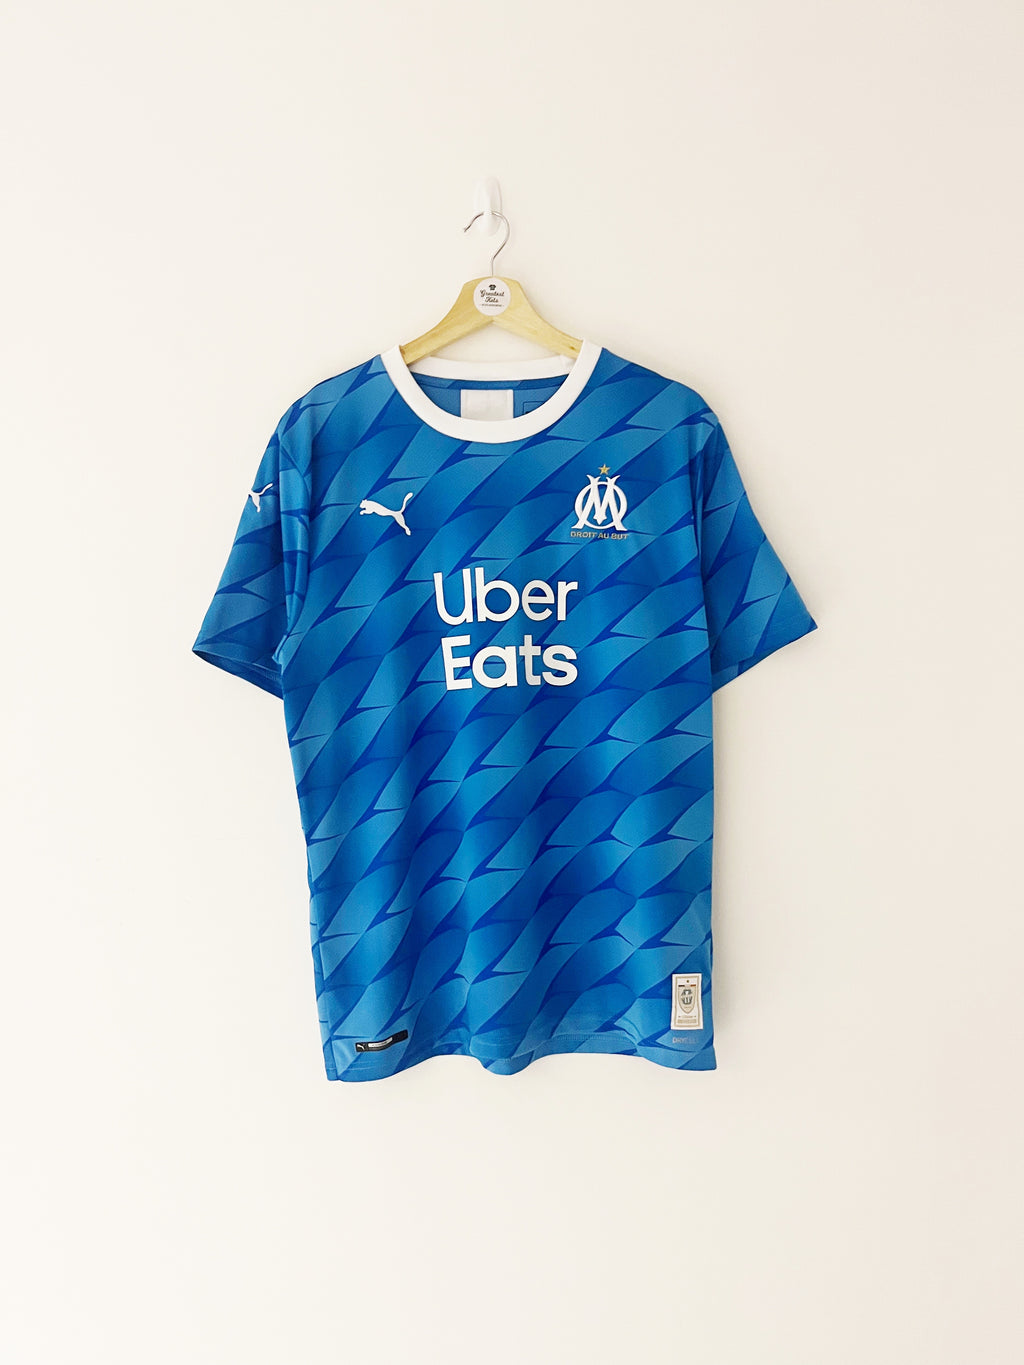 2019/20 Marseille Home Shirt (L) 9.5/10